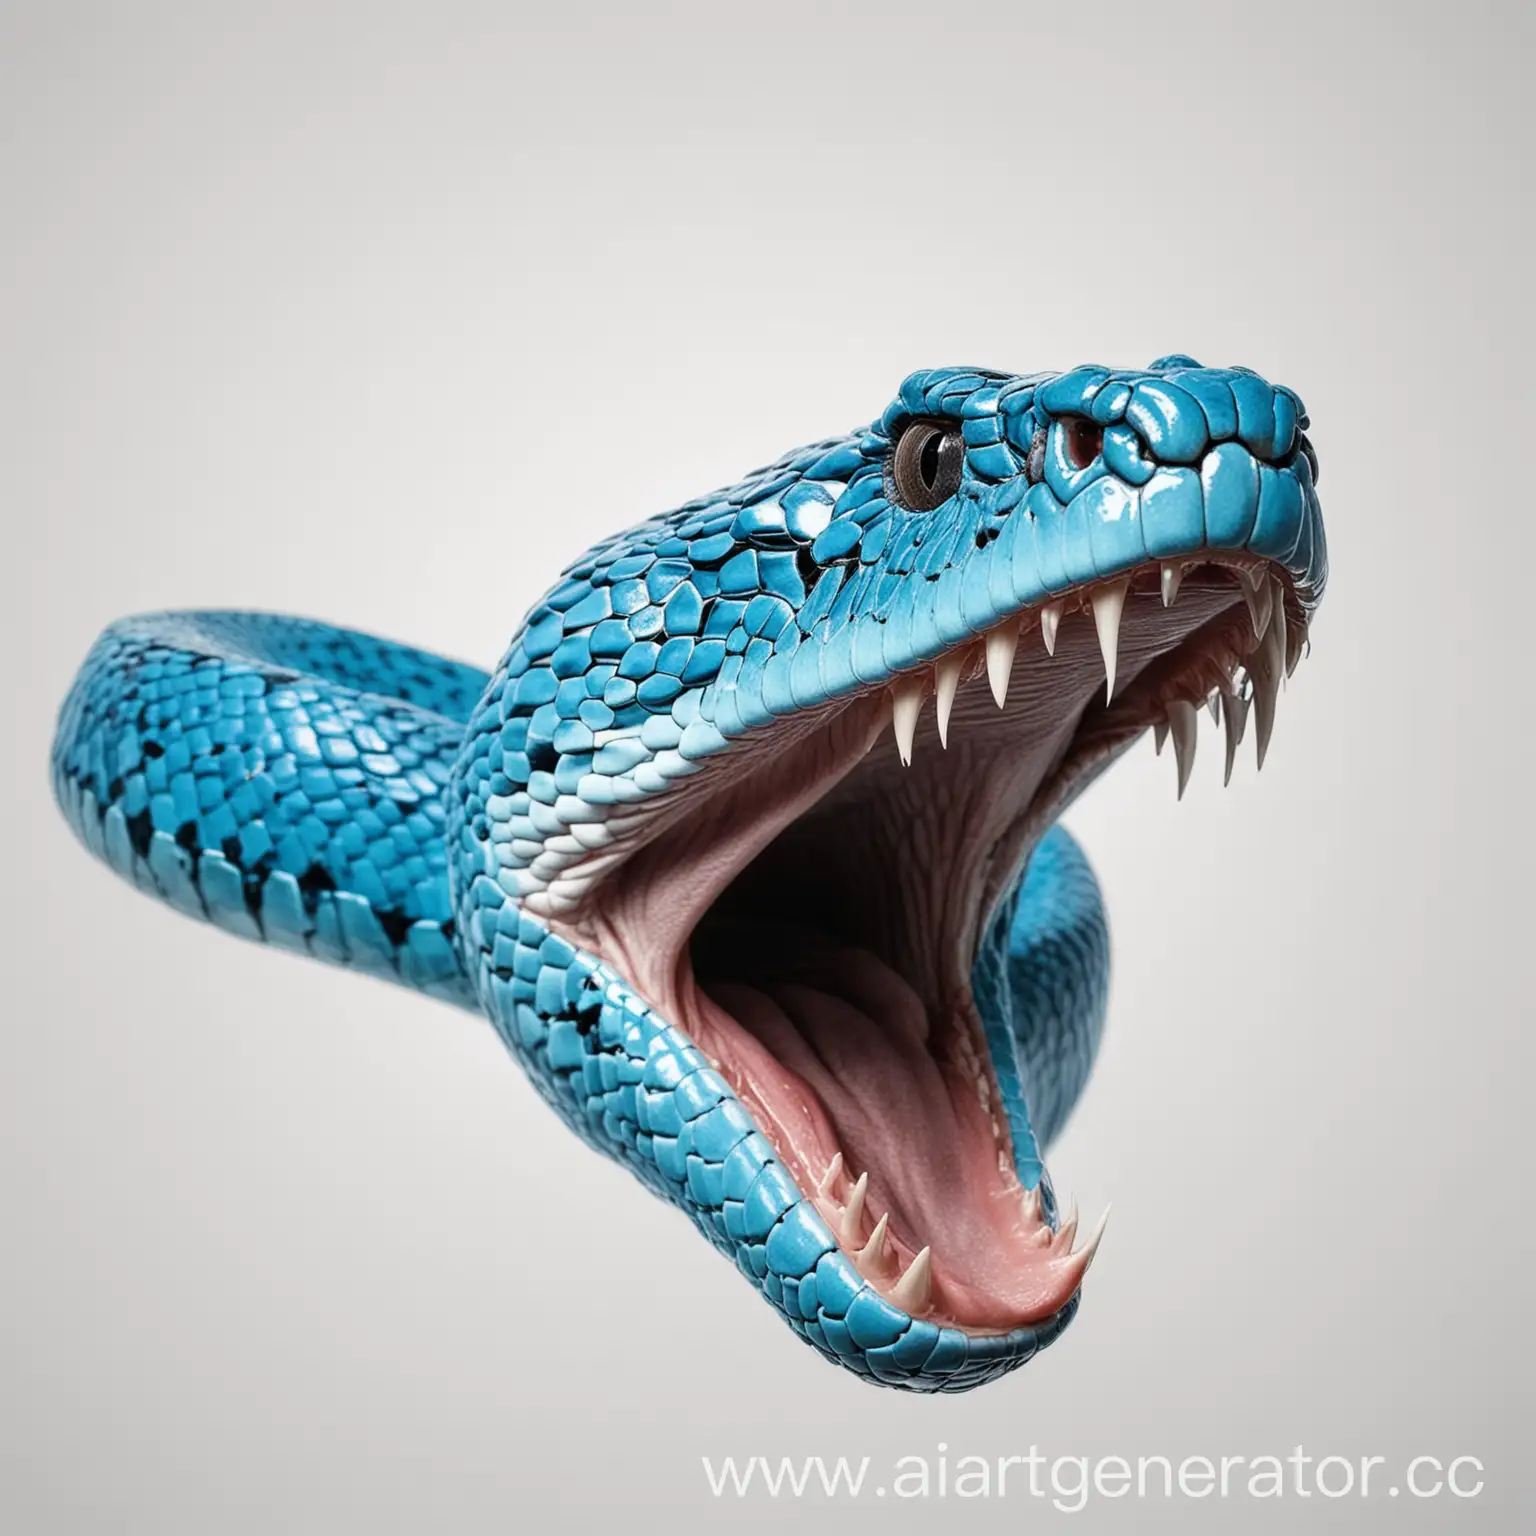 неоново-синяя змея с открытым ртом на белом фоне